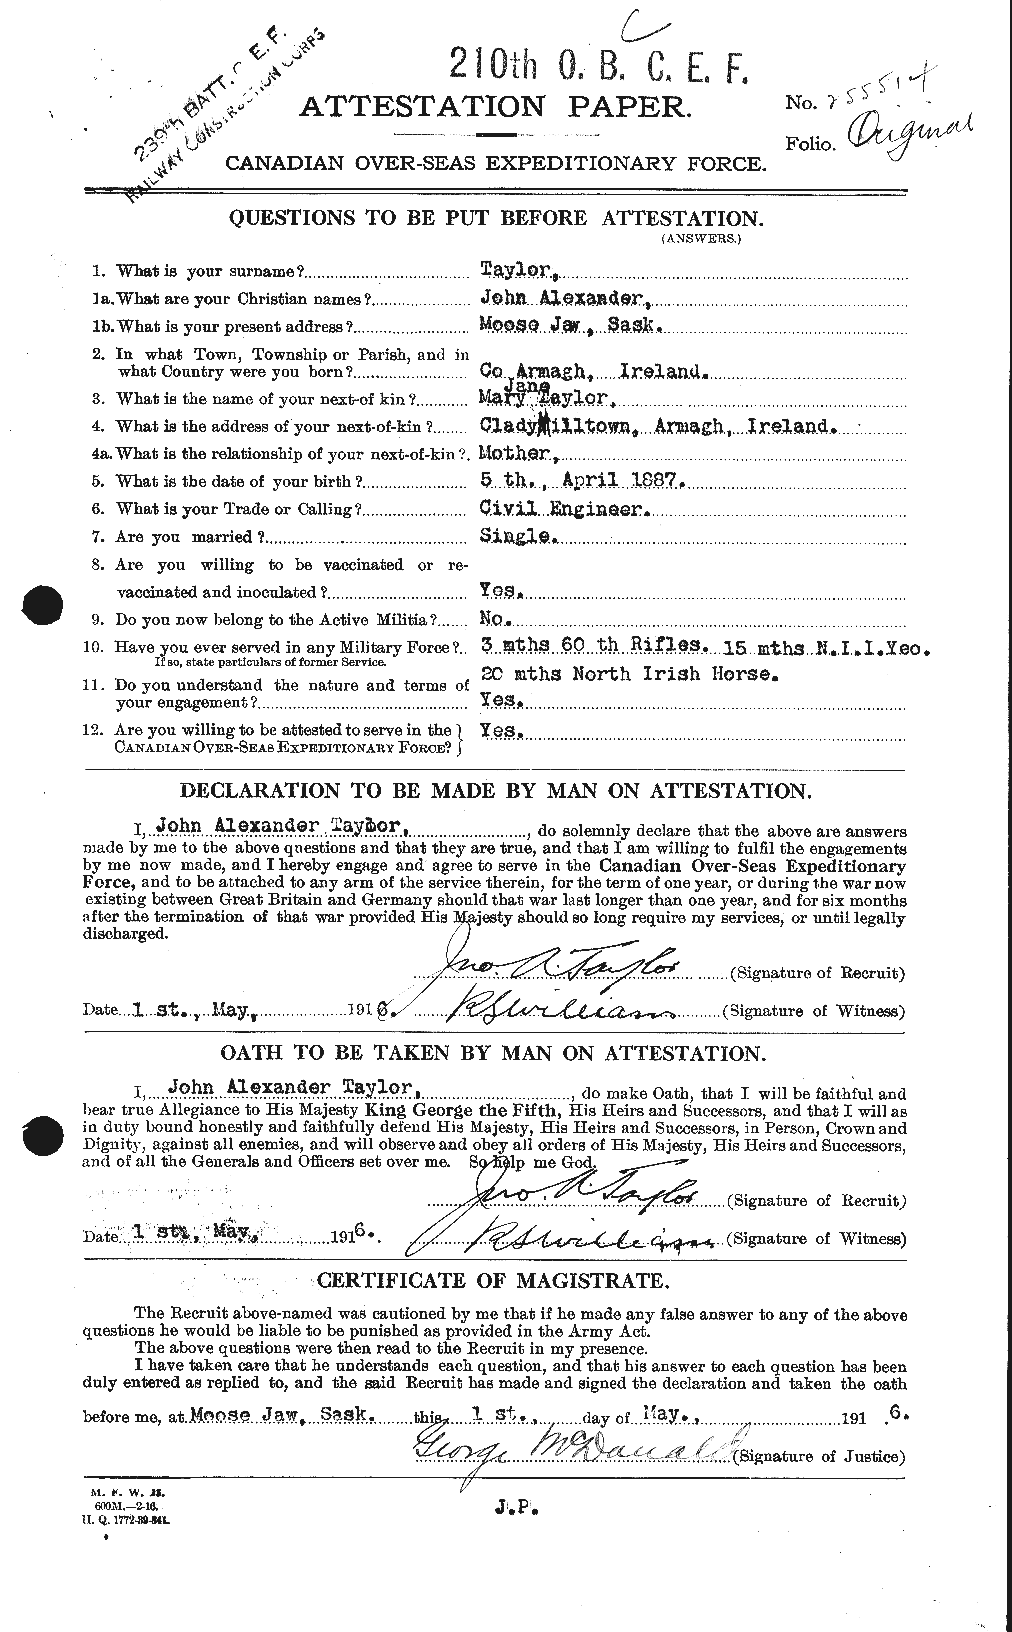 Dossiers du Personnel de la Première Guerre mondiale - CEC 627042a